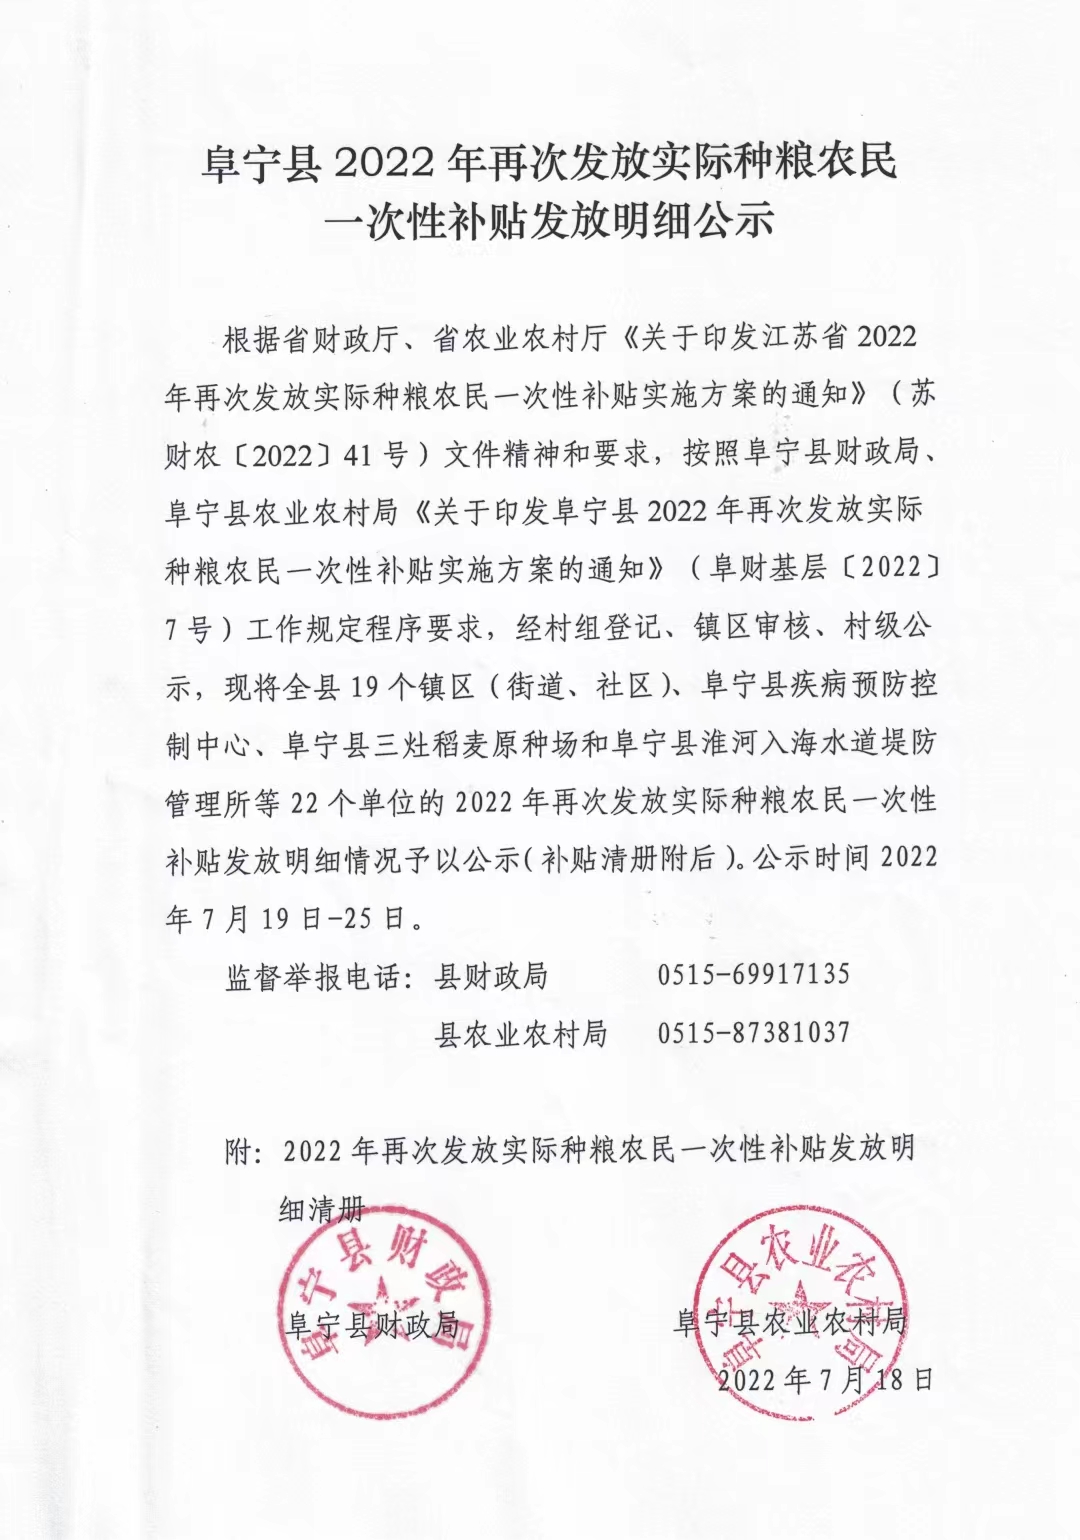 阜宁县人民政府 信息报送 关于申报2022年度中央服务业资金和省级商务发展资金项目的公示